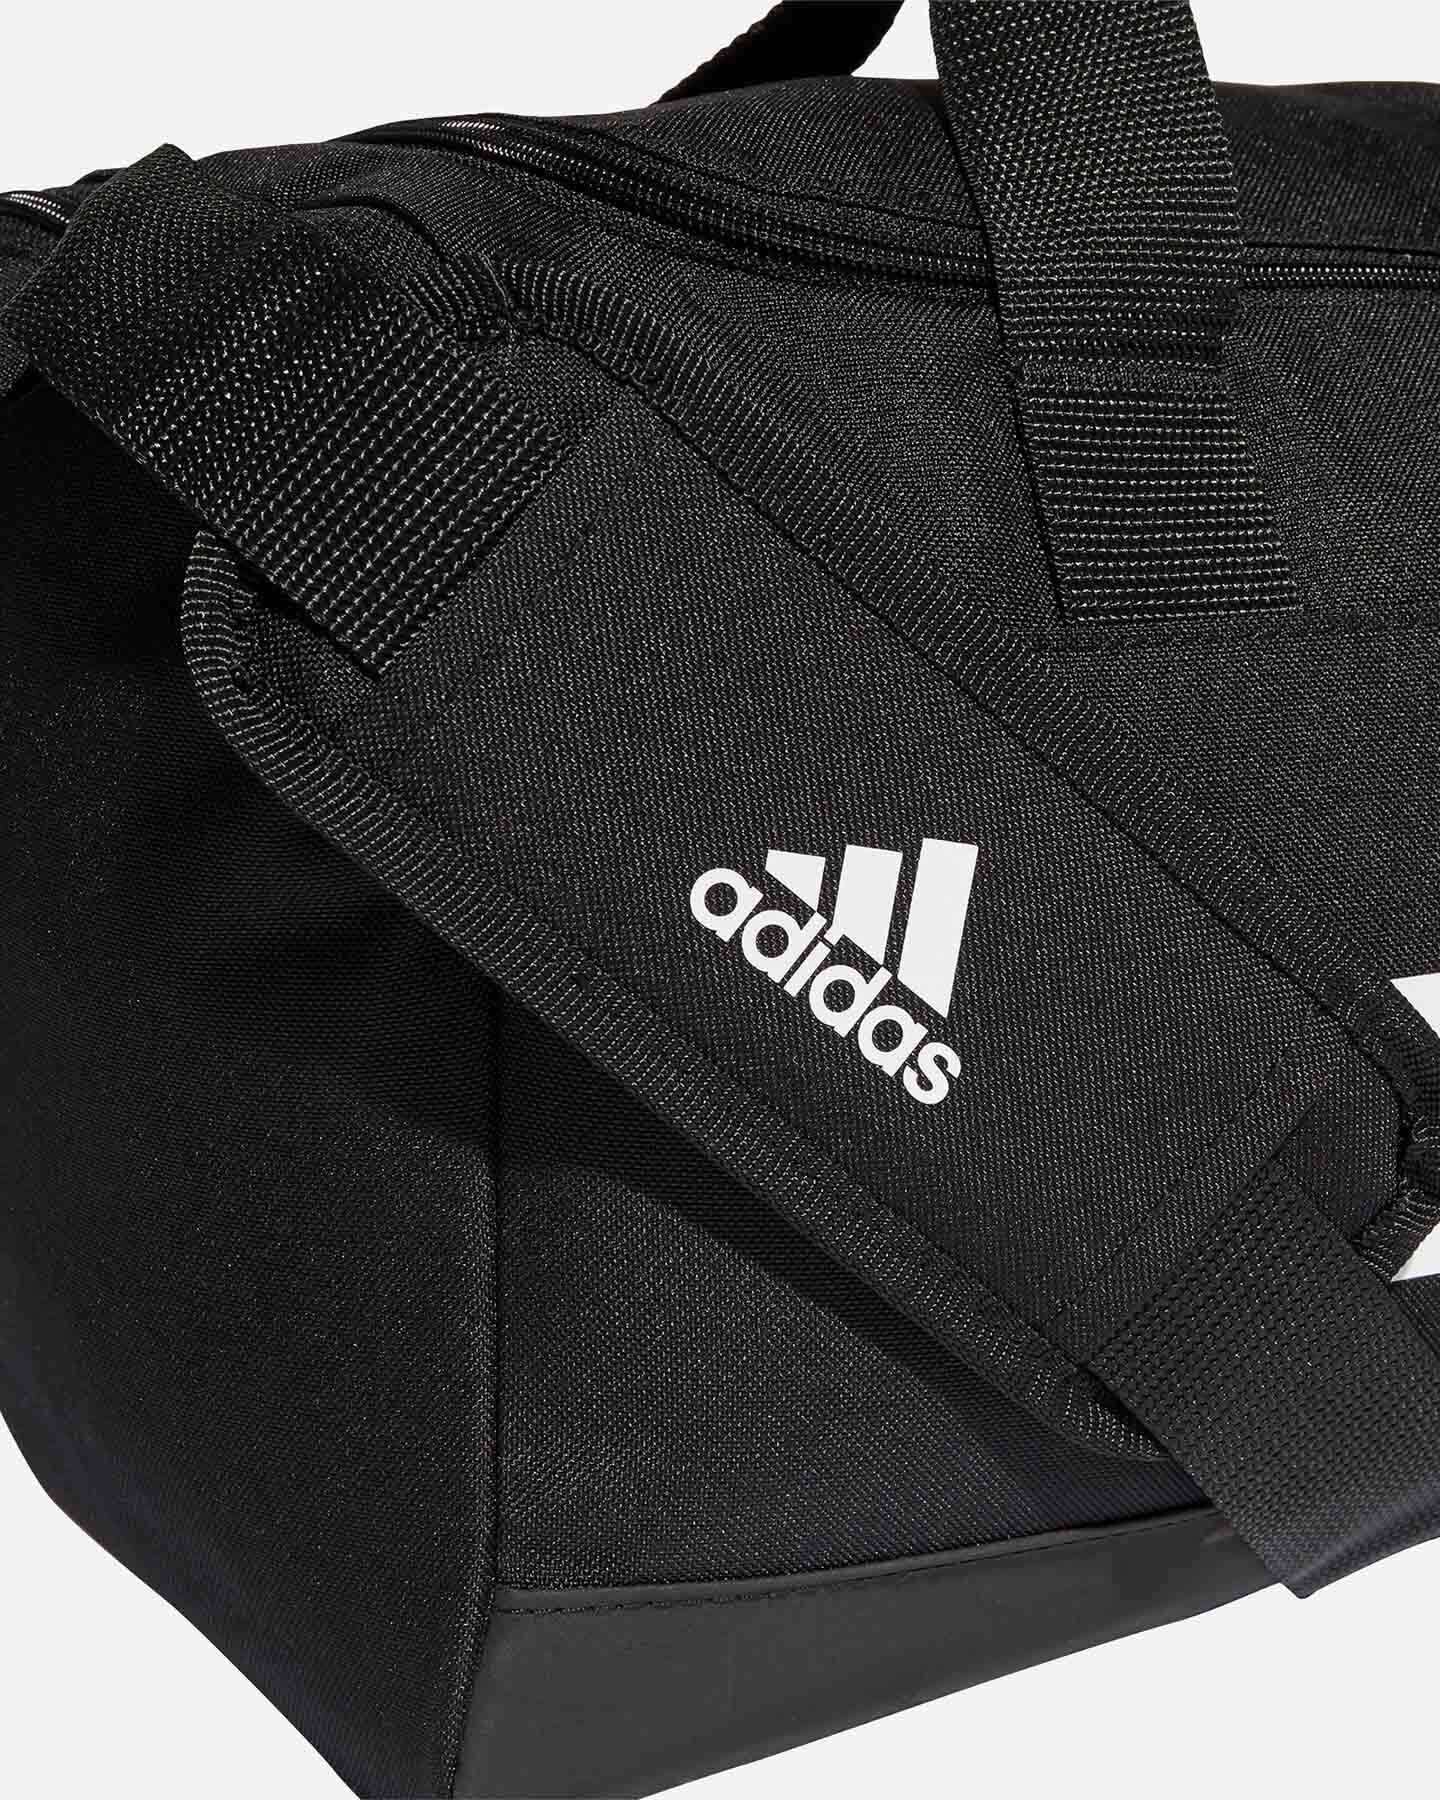 Adidas Essential Training Sacca Scarpe - Borse Calcio